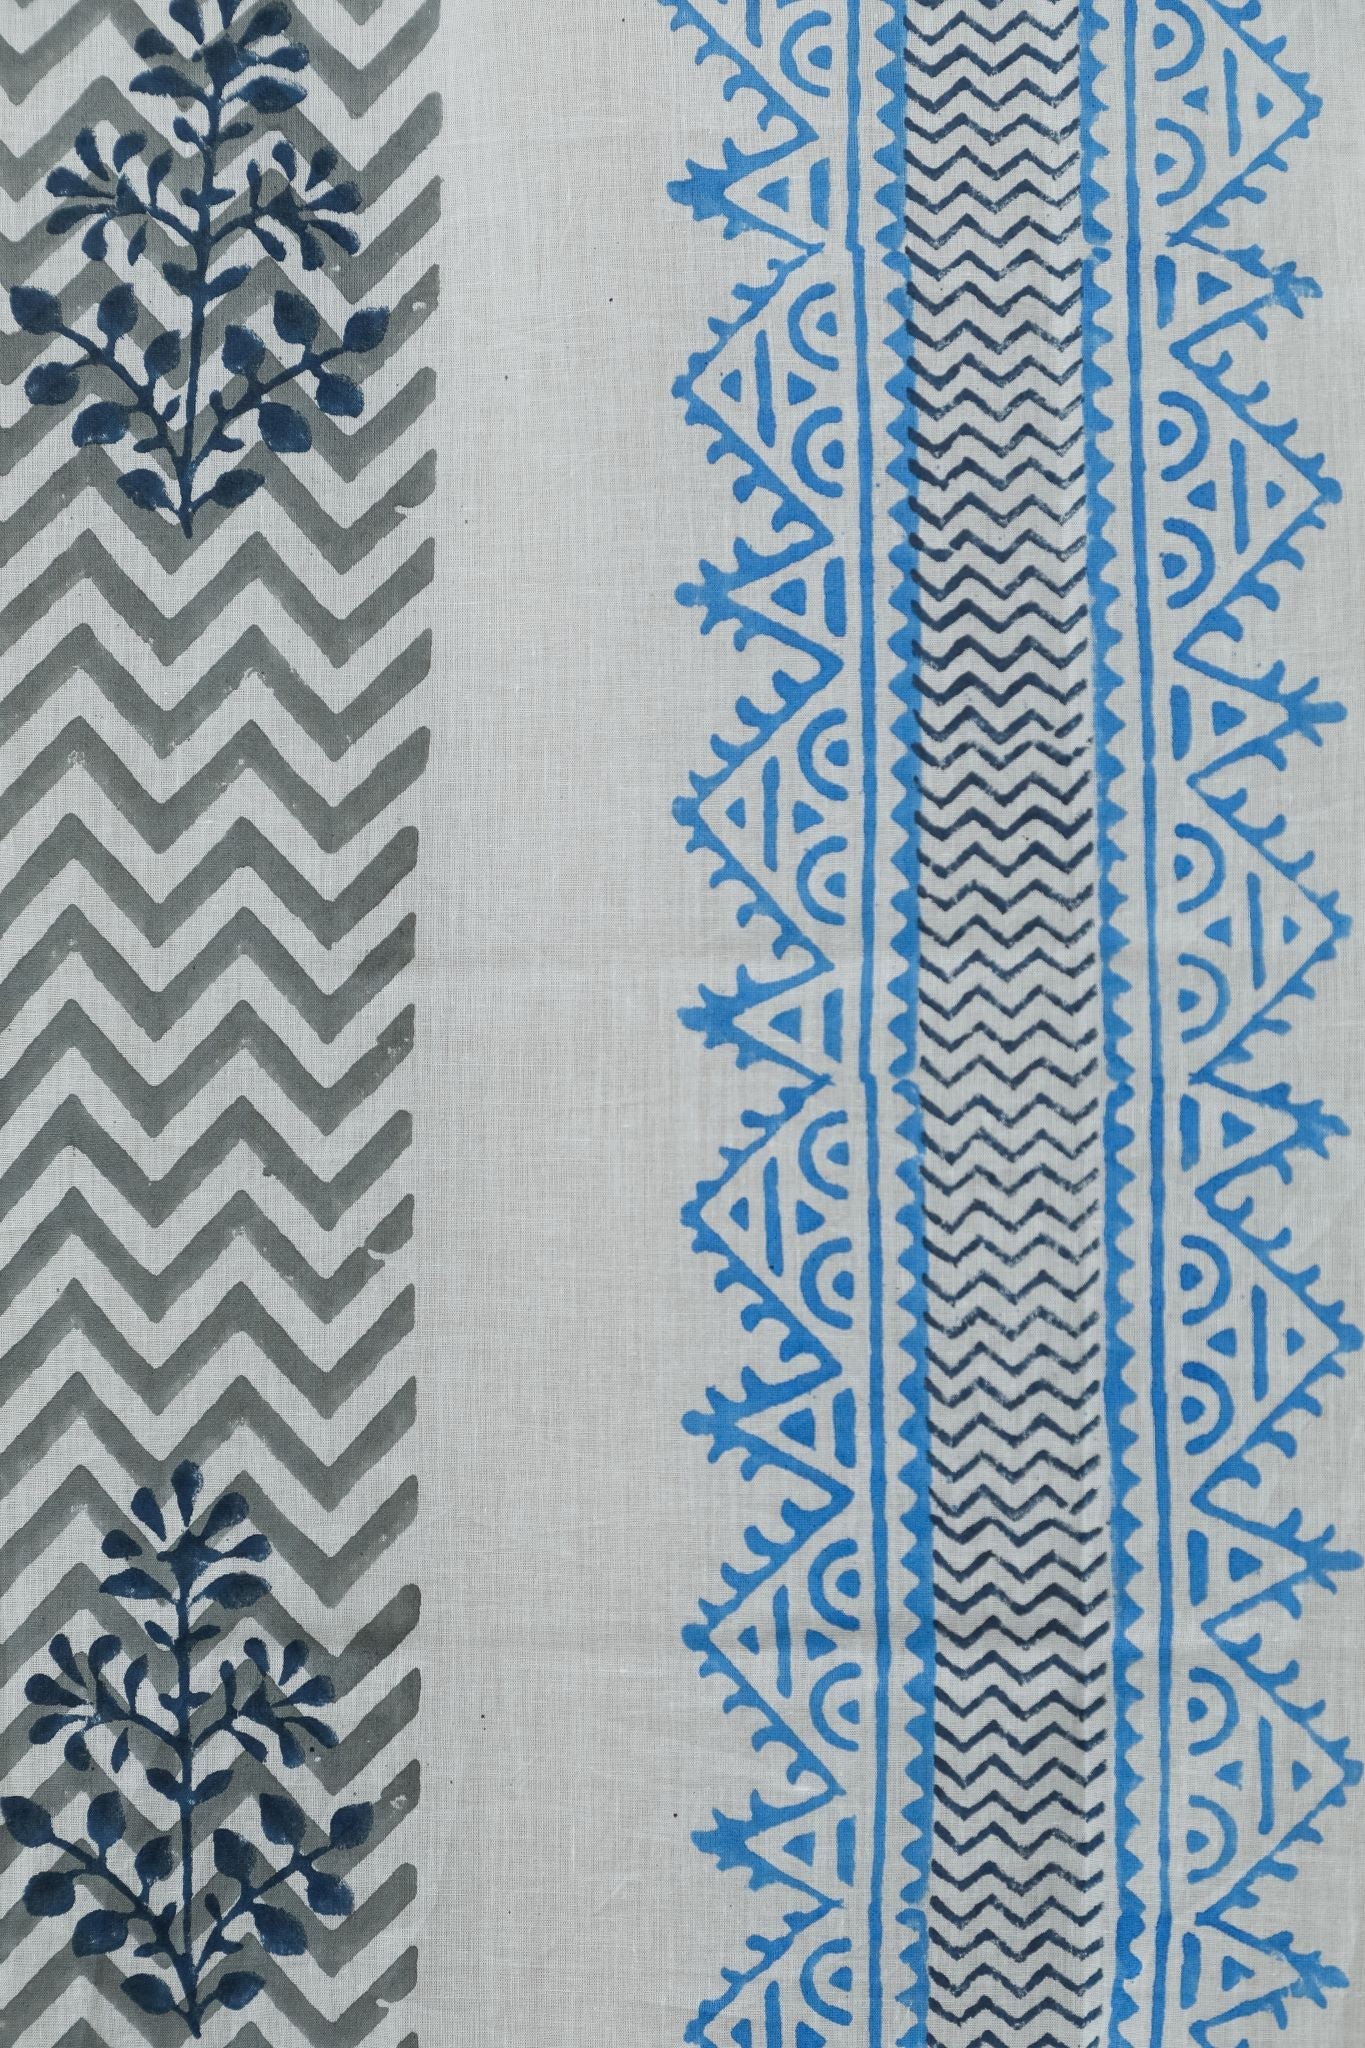 SootiSyahi 'Bering Blue' Handblock Printed Cotton Door Curtain - SootiSyahi